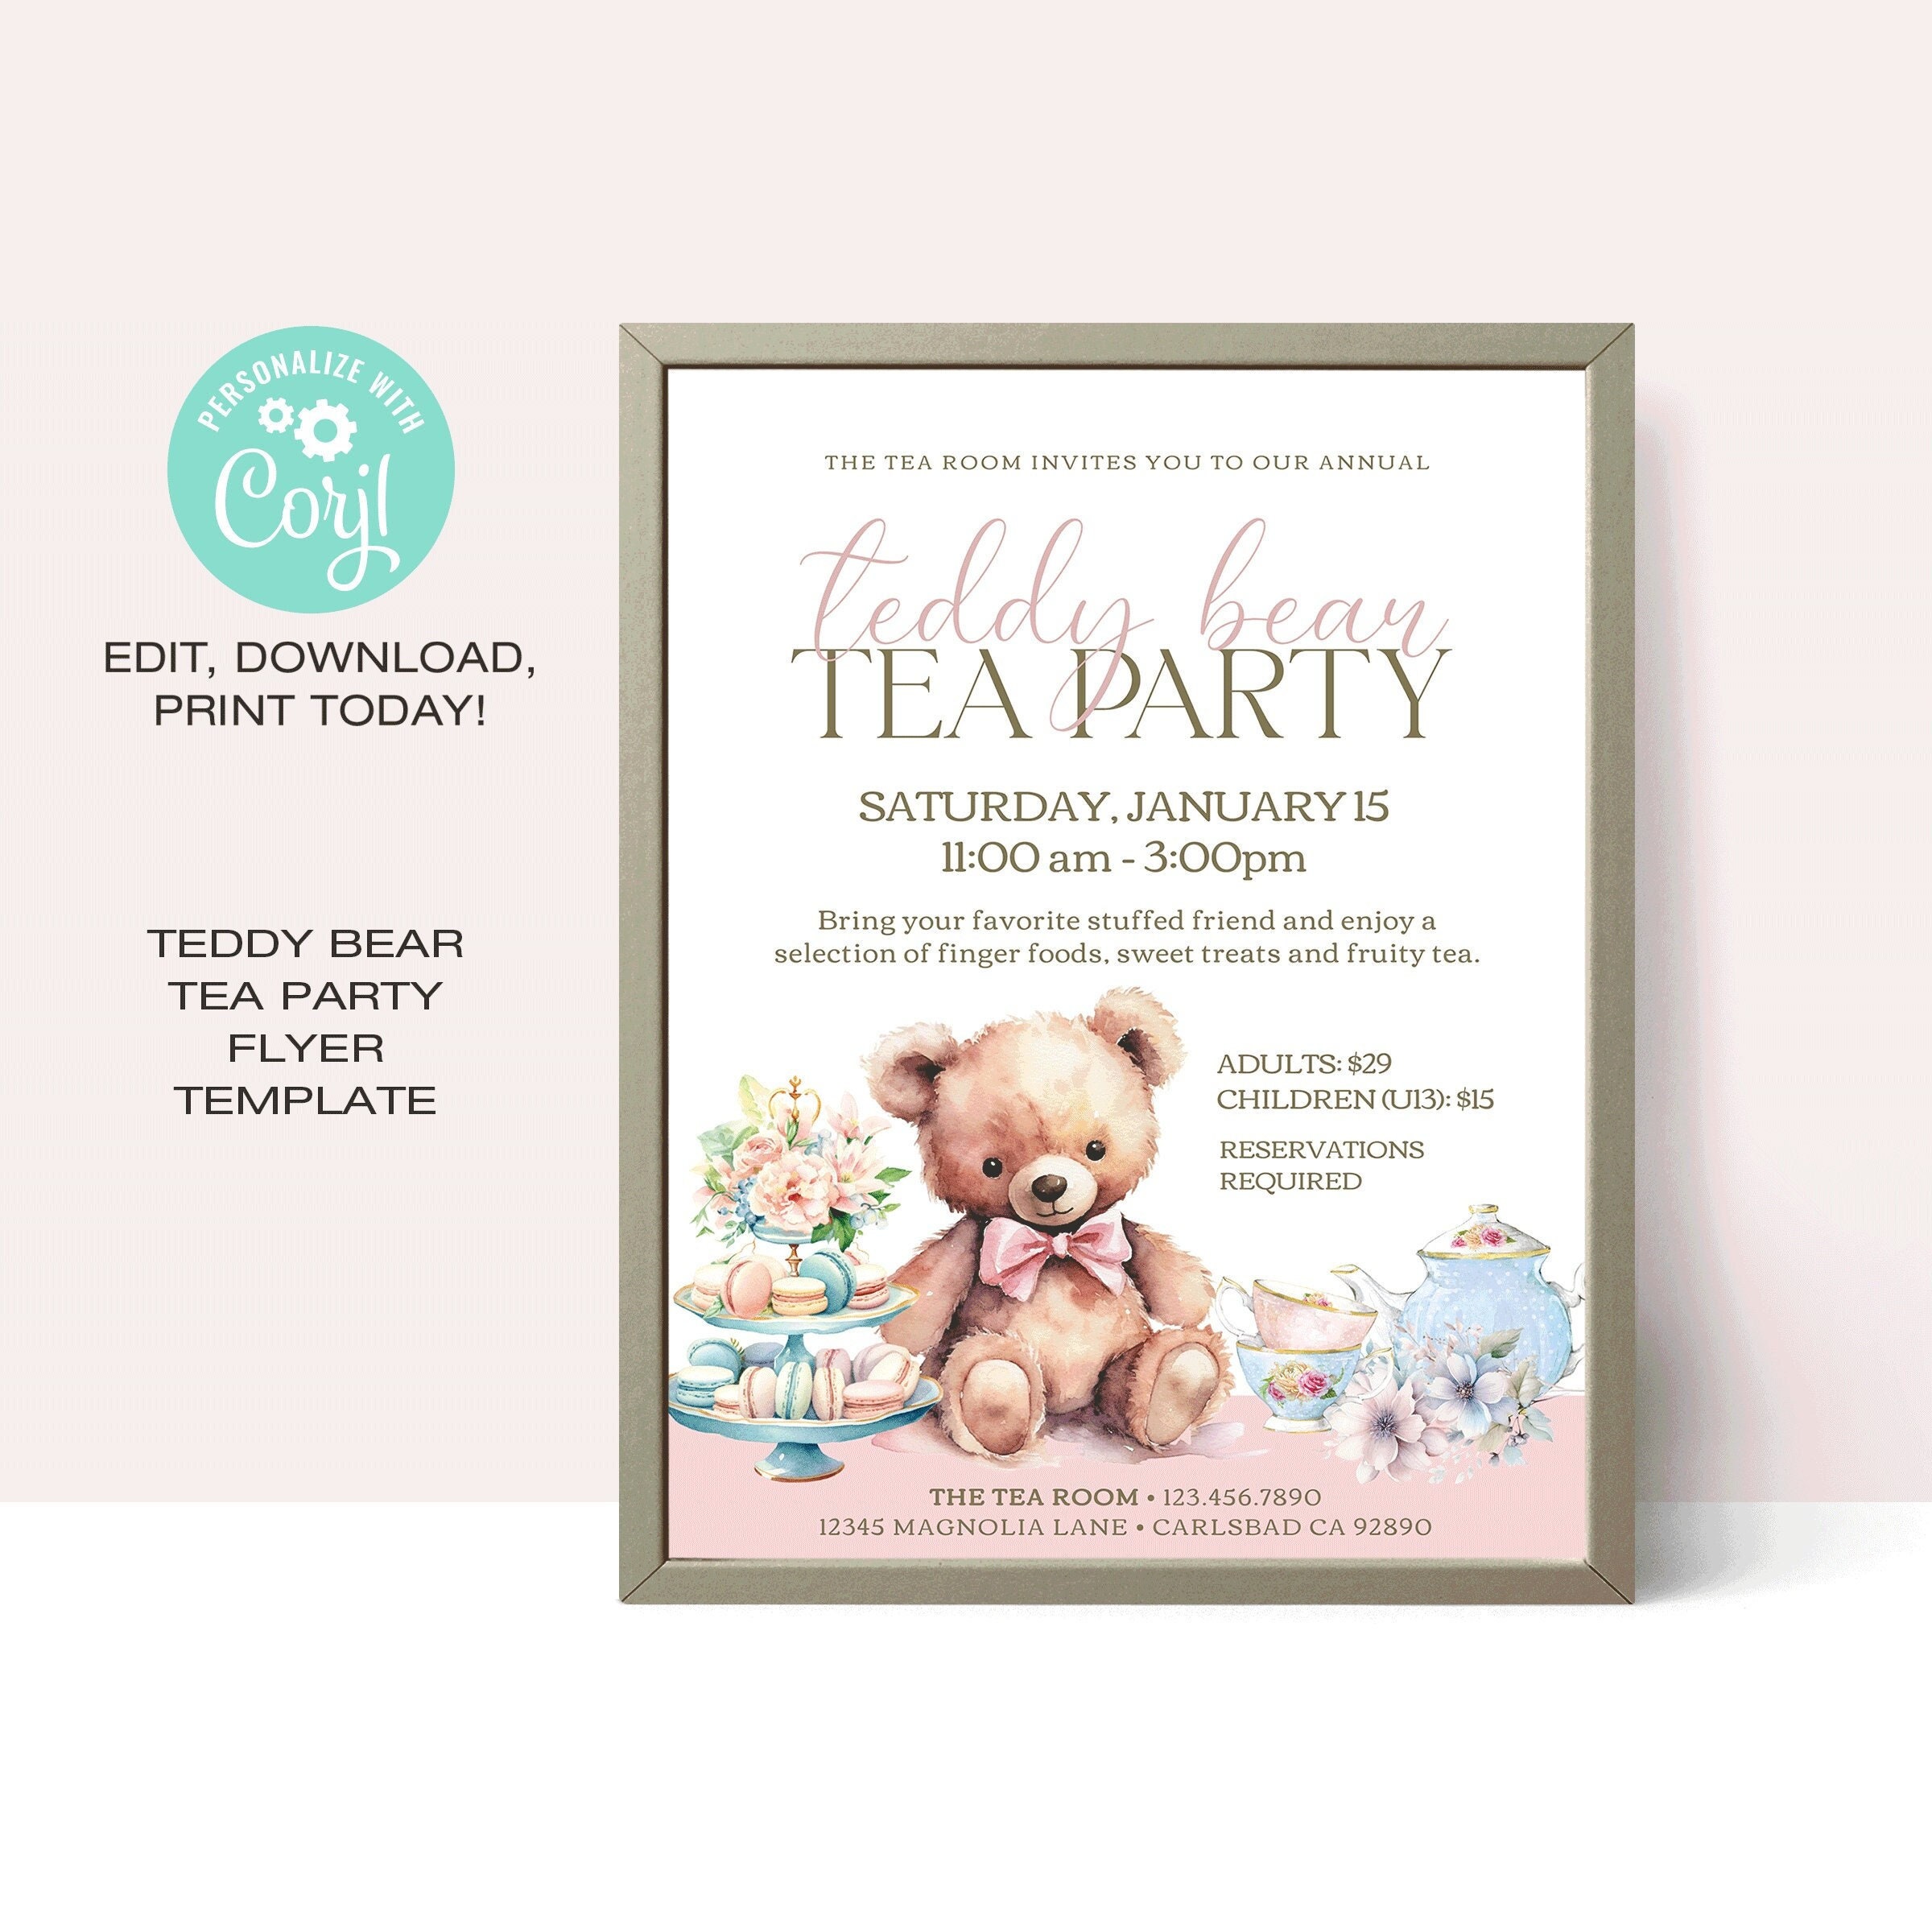 Mid-sized Teddy Bear Tea Party, Play Dough Kit, Playdough Kit